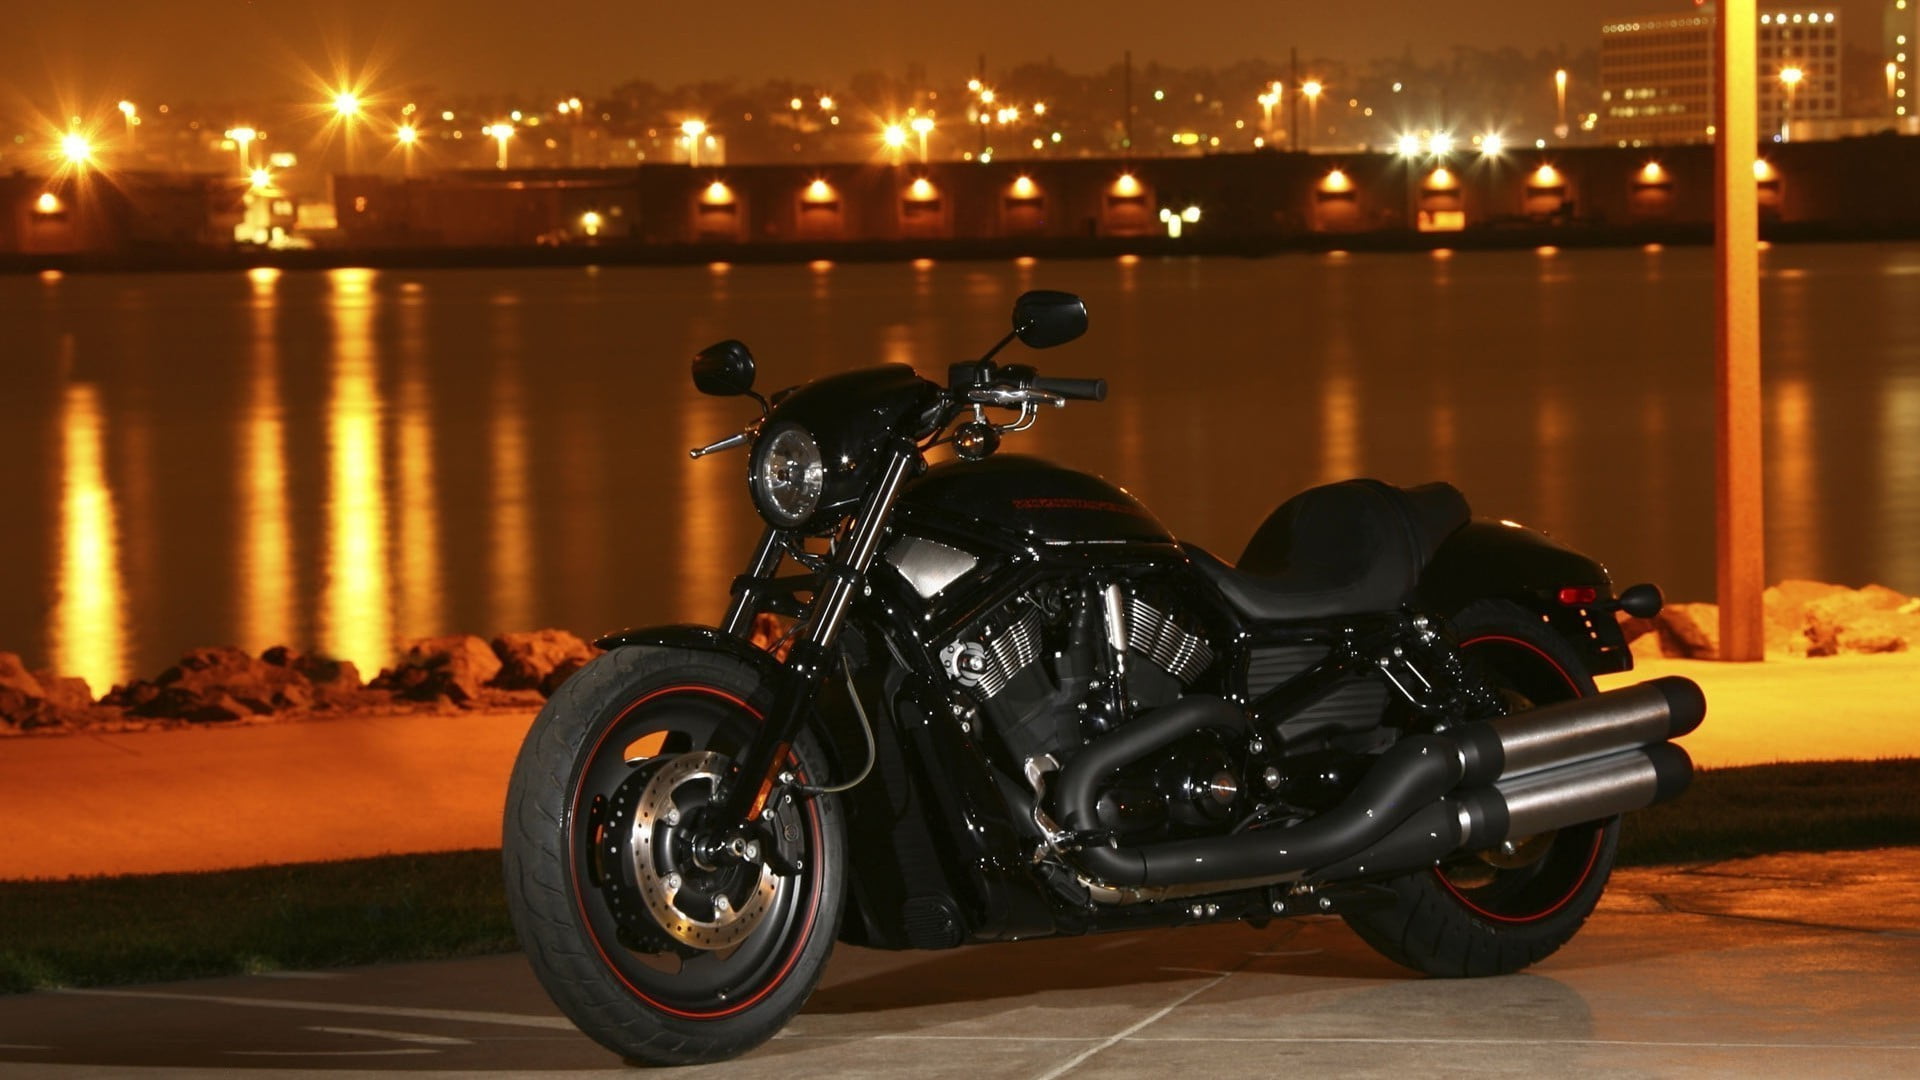 Harley Davidson Motorcycle Bike